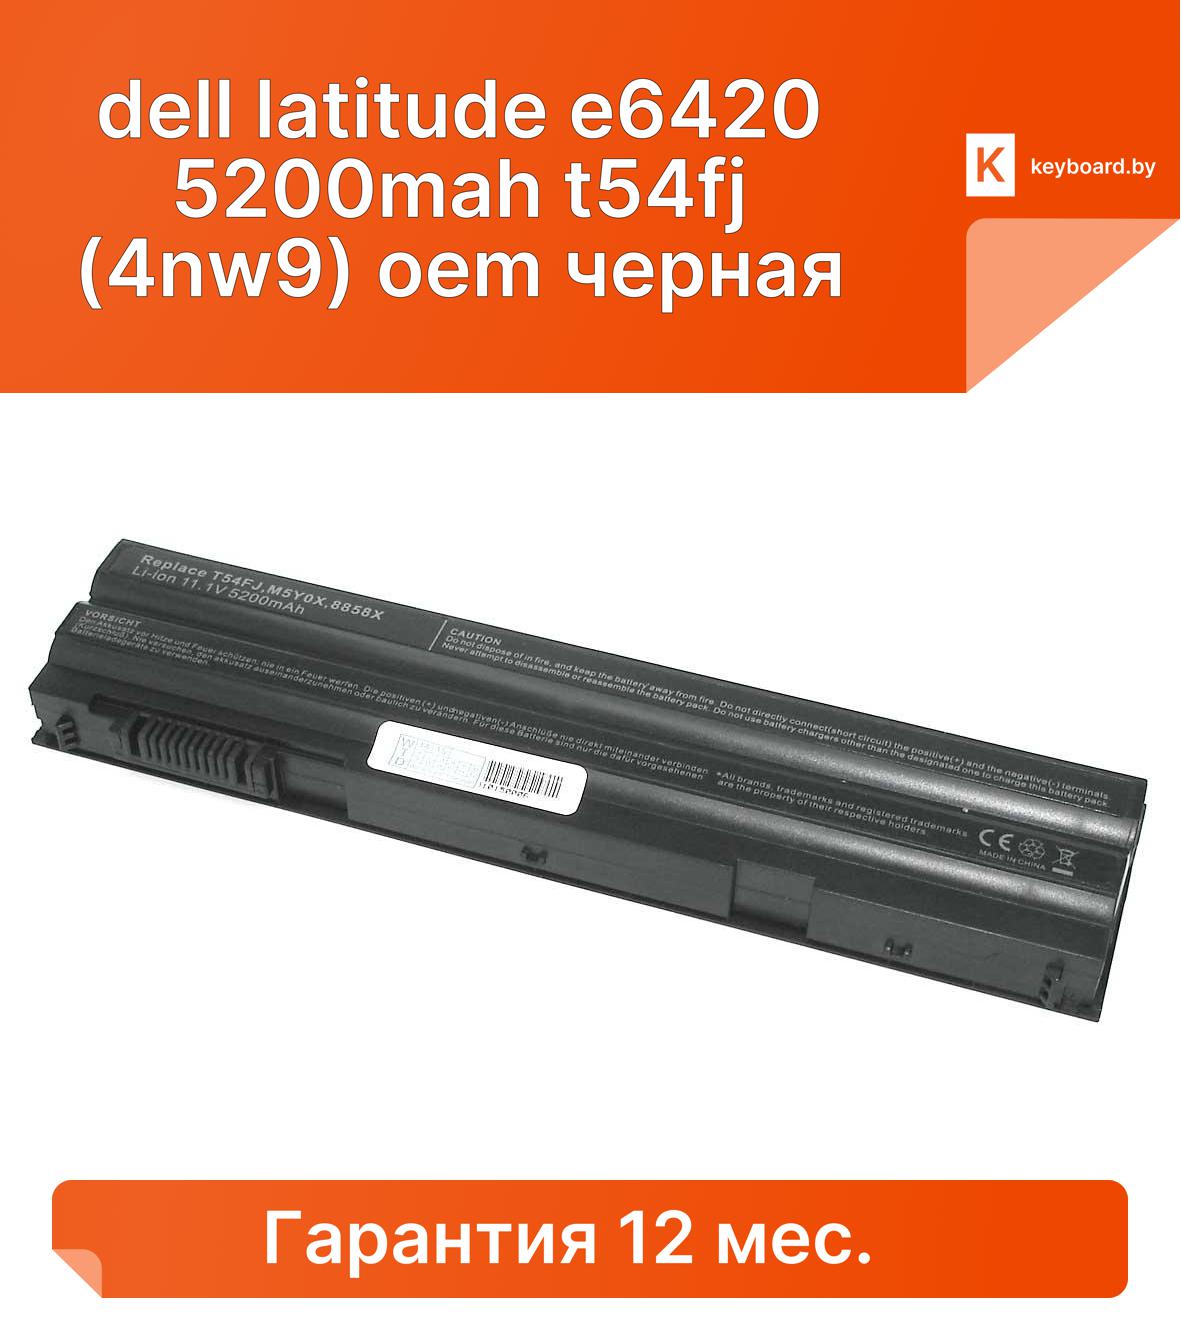 Аккумуляторная батарея для ноутбука dell latitude e6420 5200mah t54fj (4nw9) oem черная